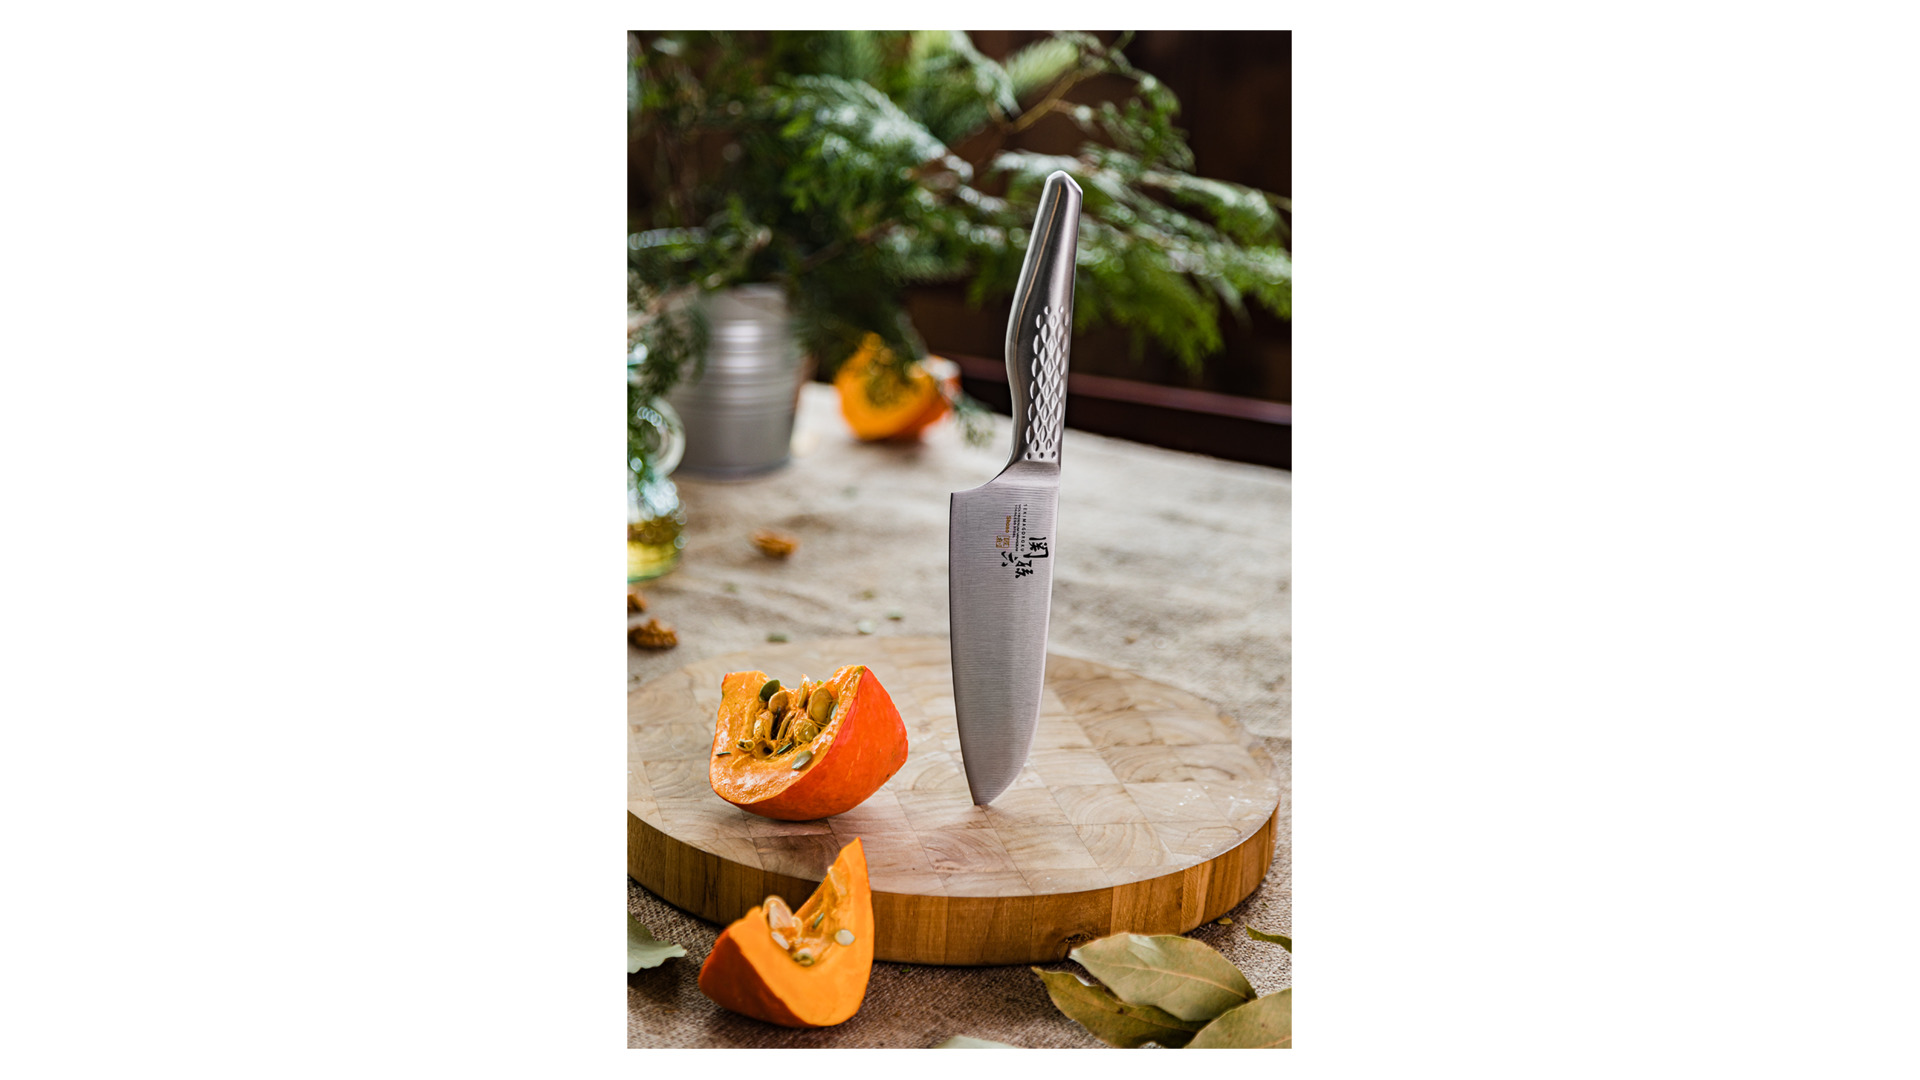 Нож поварской Сантоку KAI Магороку Шосо 14,5 см, сталь кованая нержавеющая